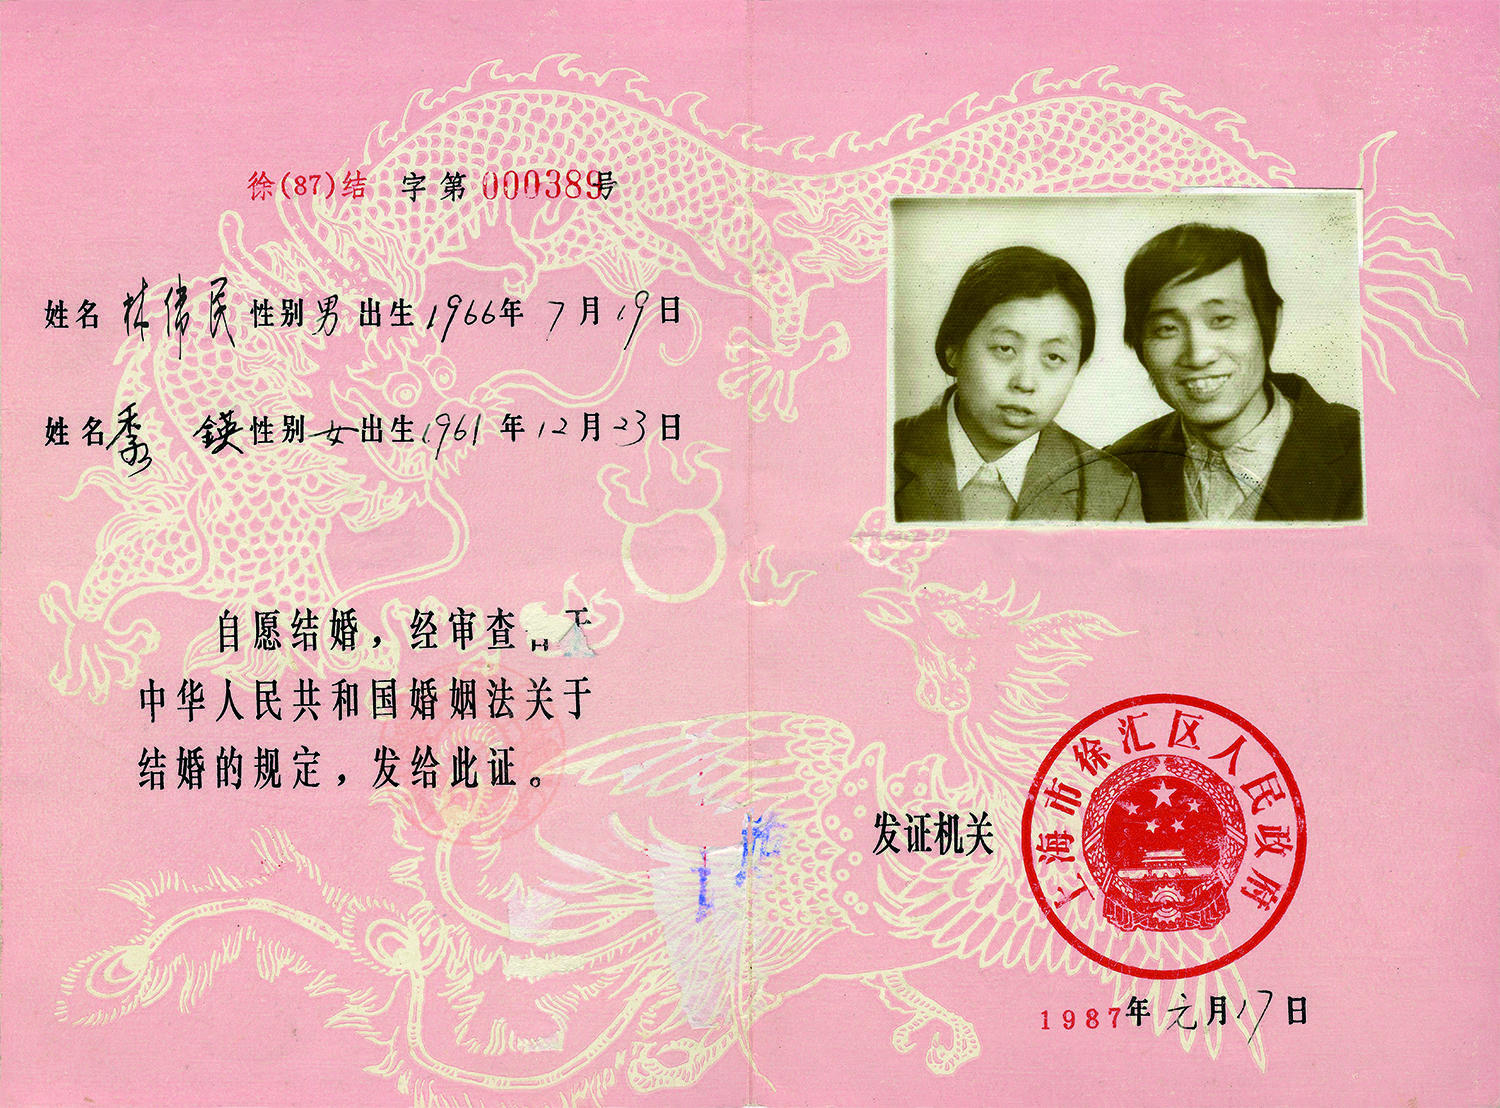 圖說結婚證書花樣變遷,中國人的愛和浪漫都在細節裡